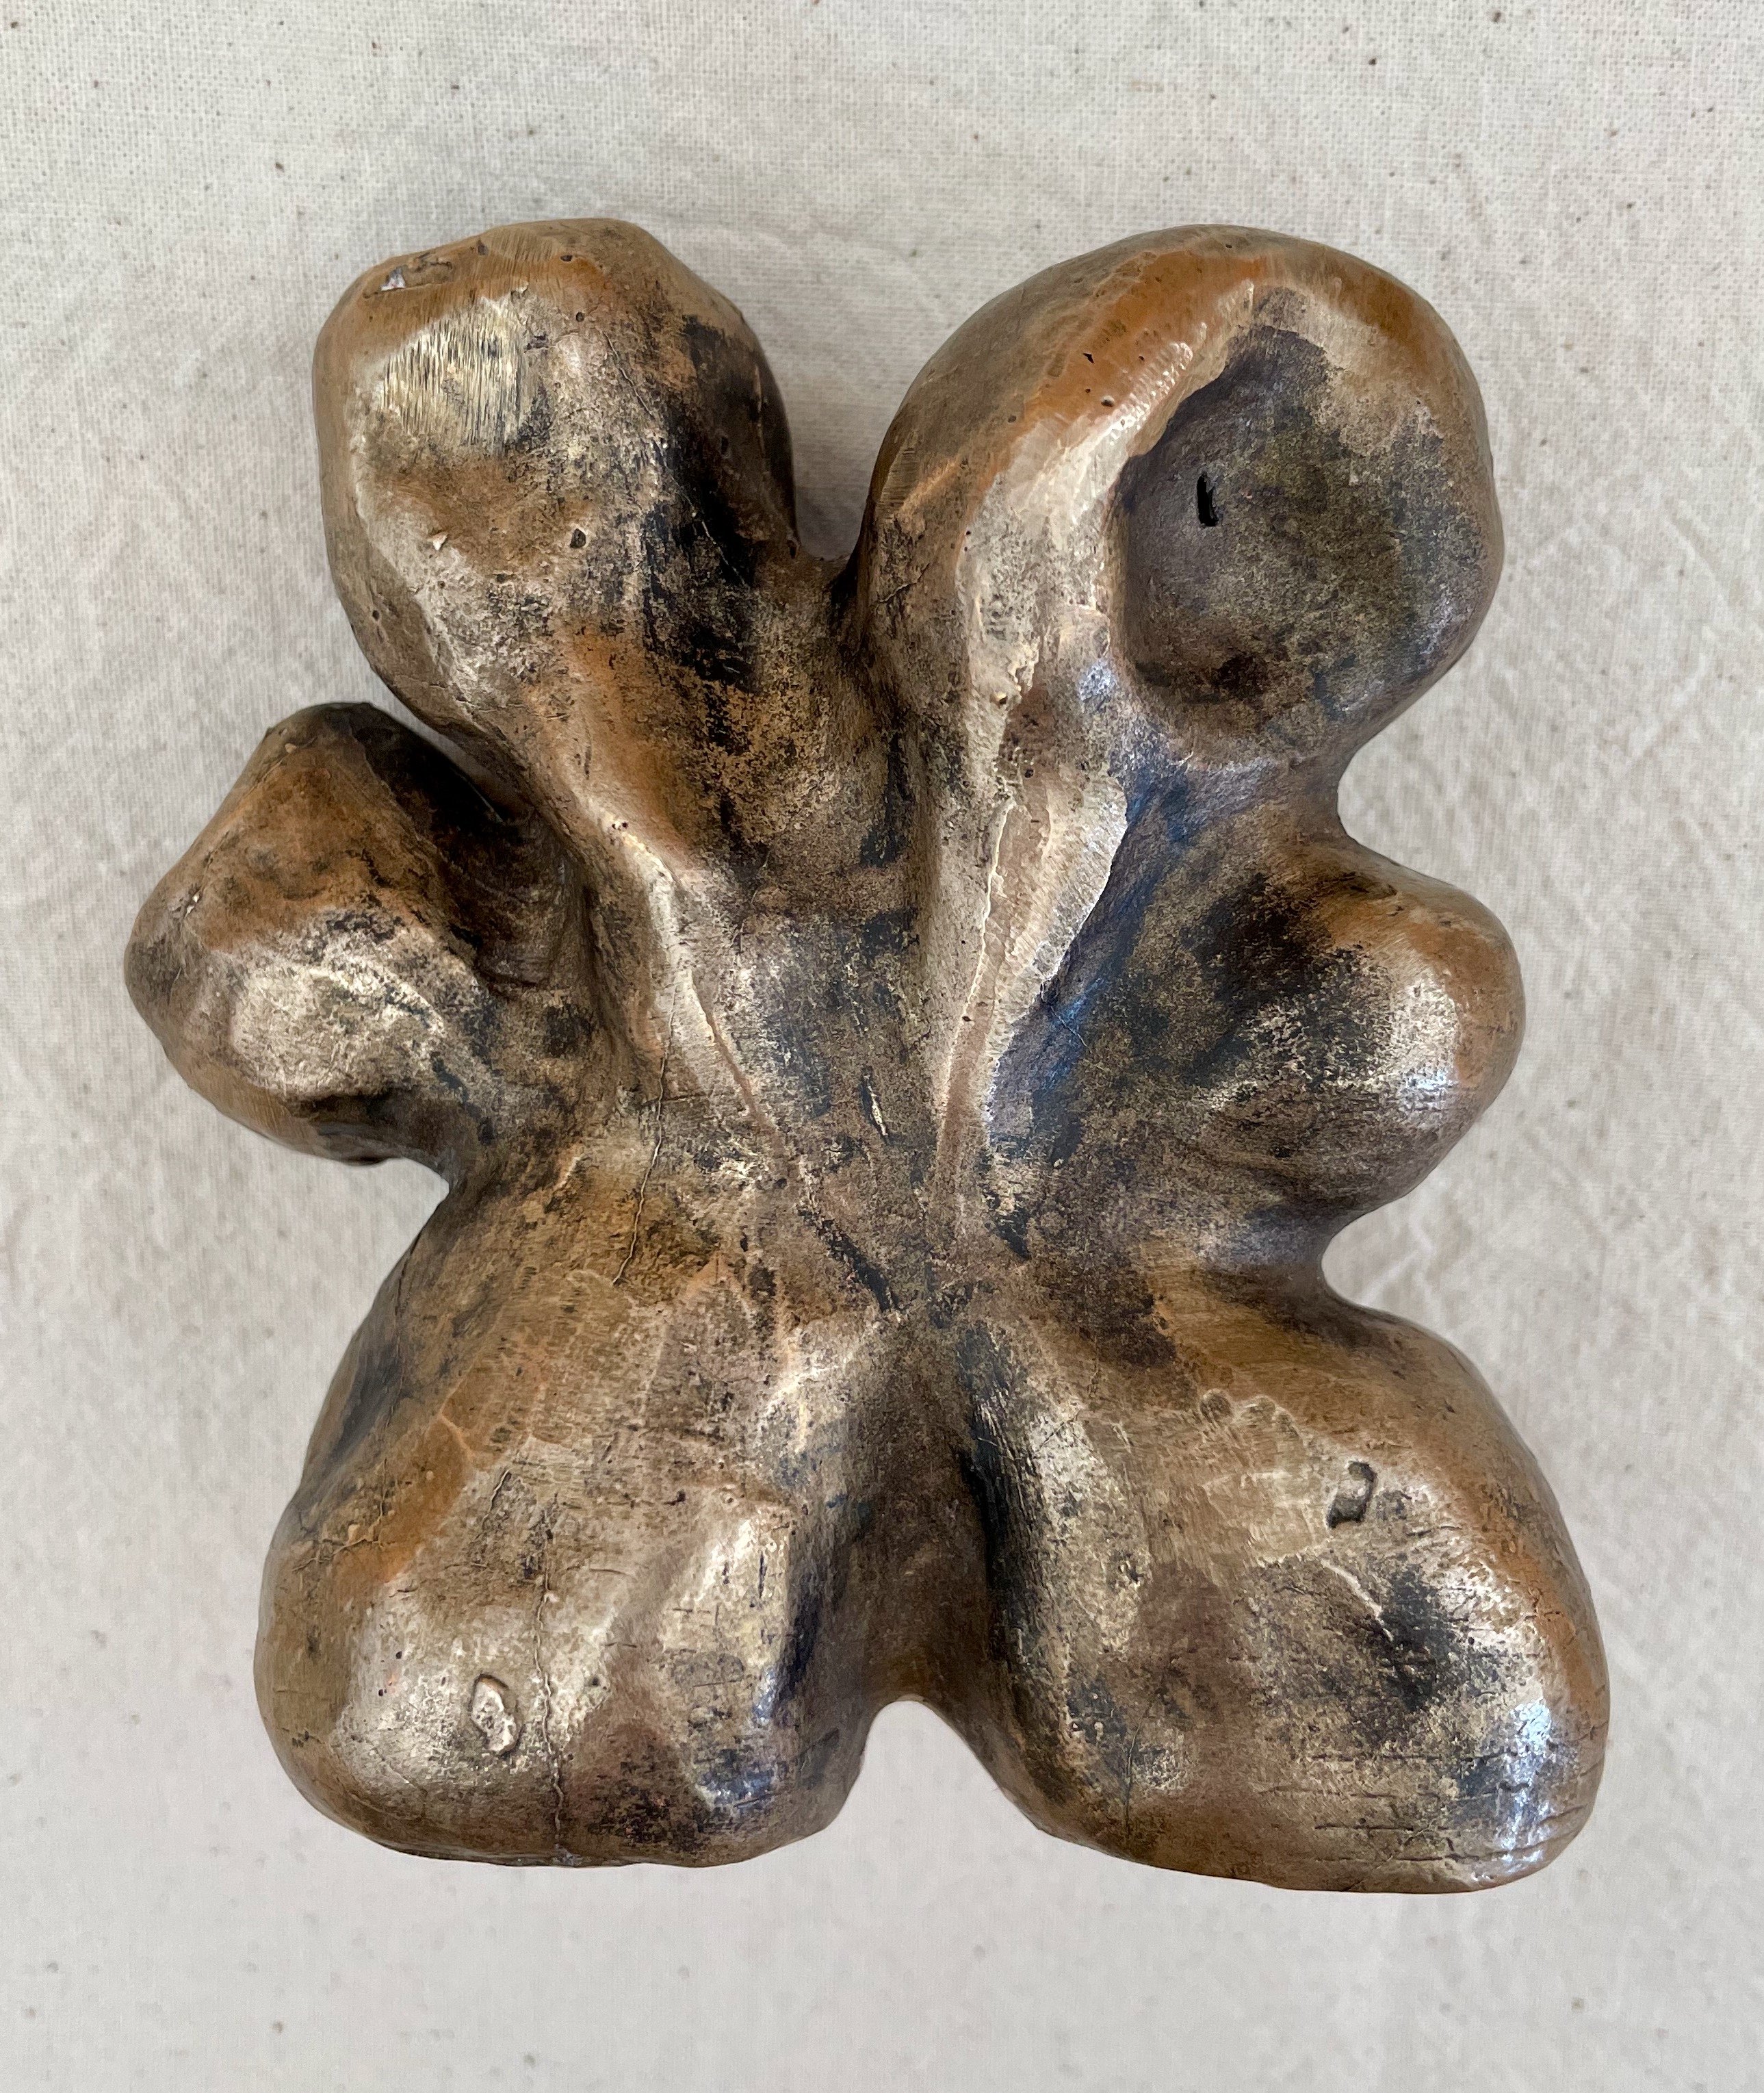 BA Fine Art work by Lauren Richeda showing an abstract bronze sculpture.